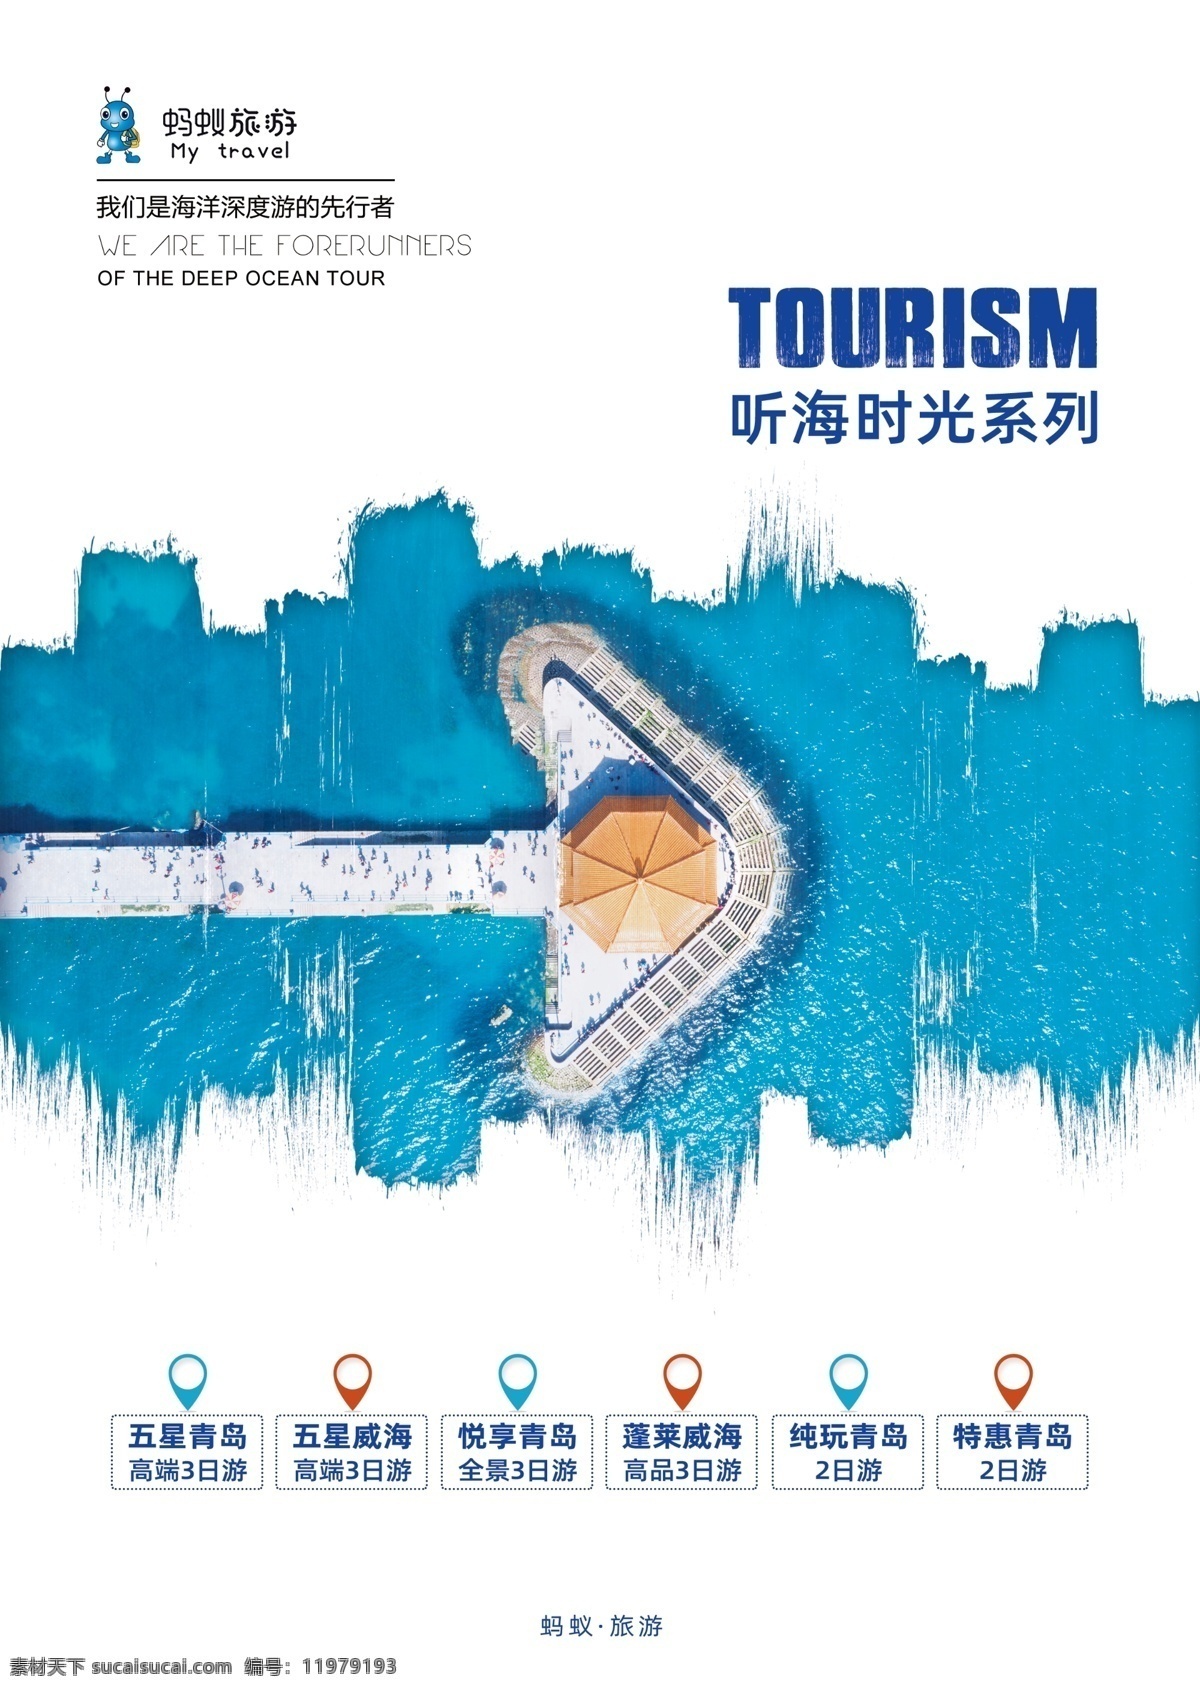 dm 单 青岛旅游 青岛 听海时光 高端 度假 dm单 广告印刷 山东旅游海报